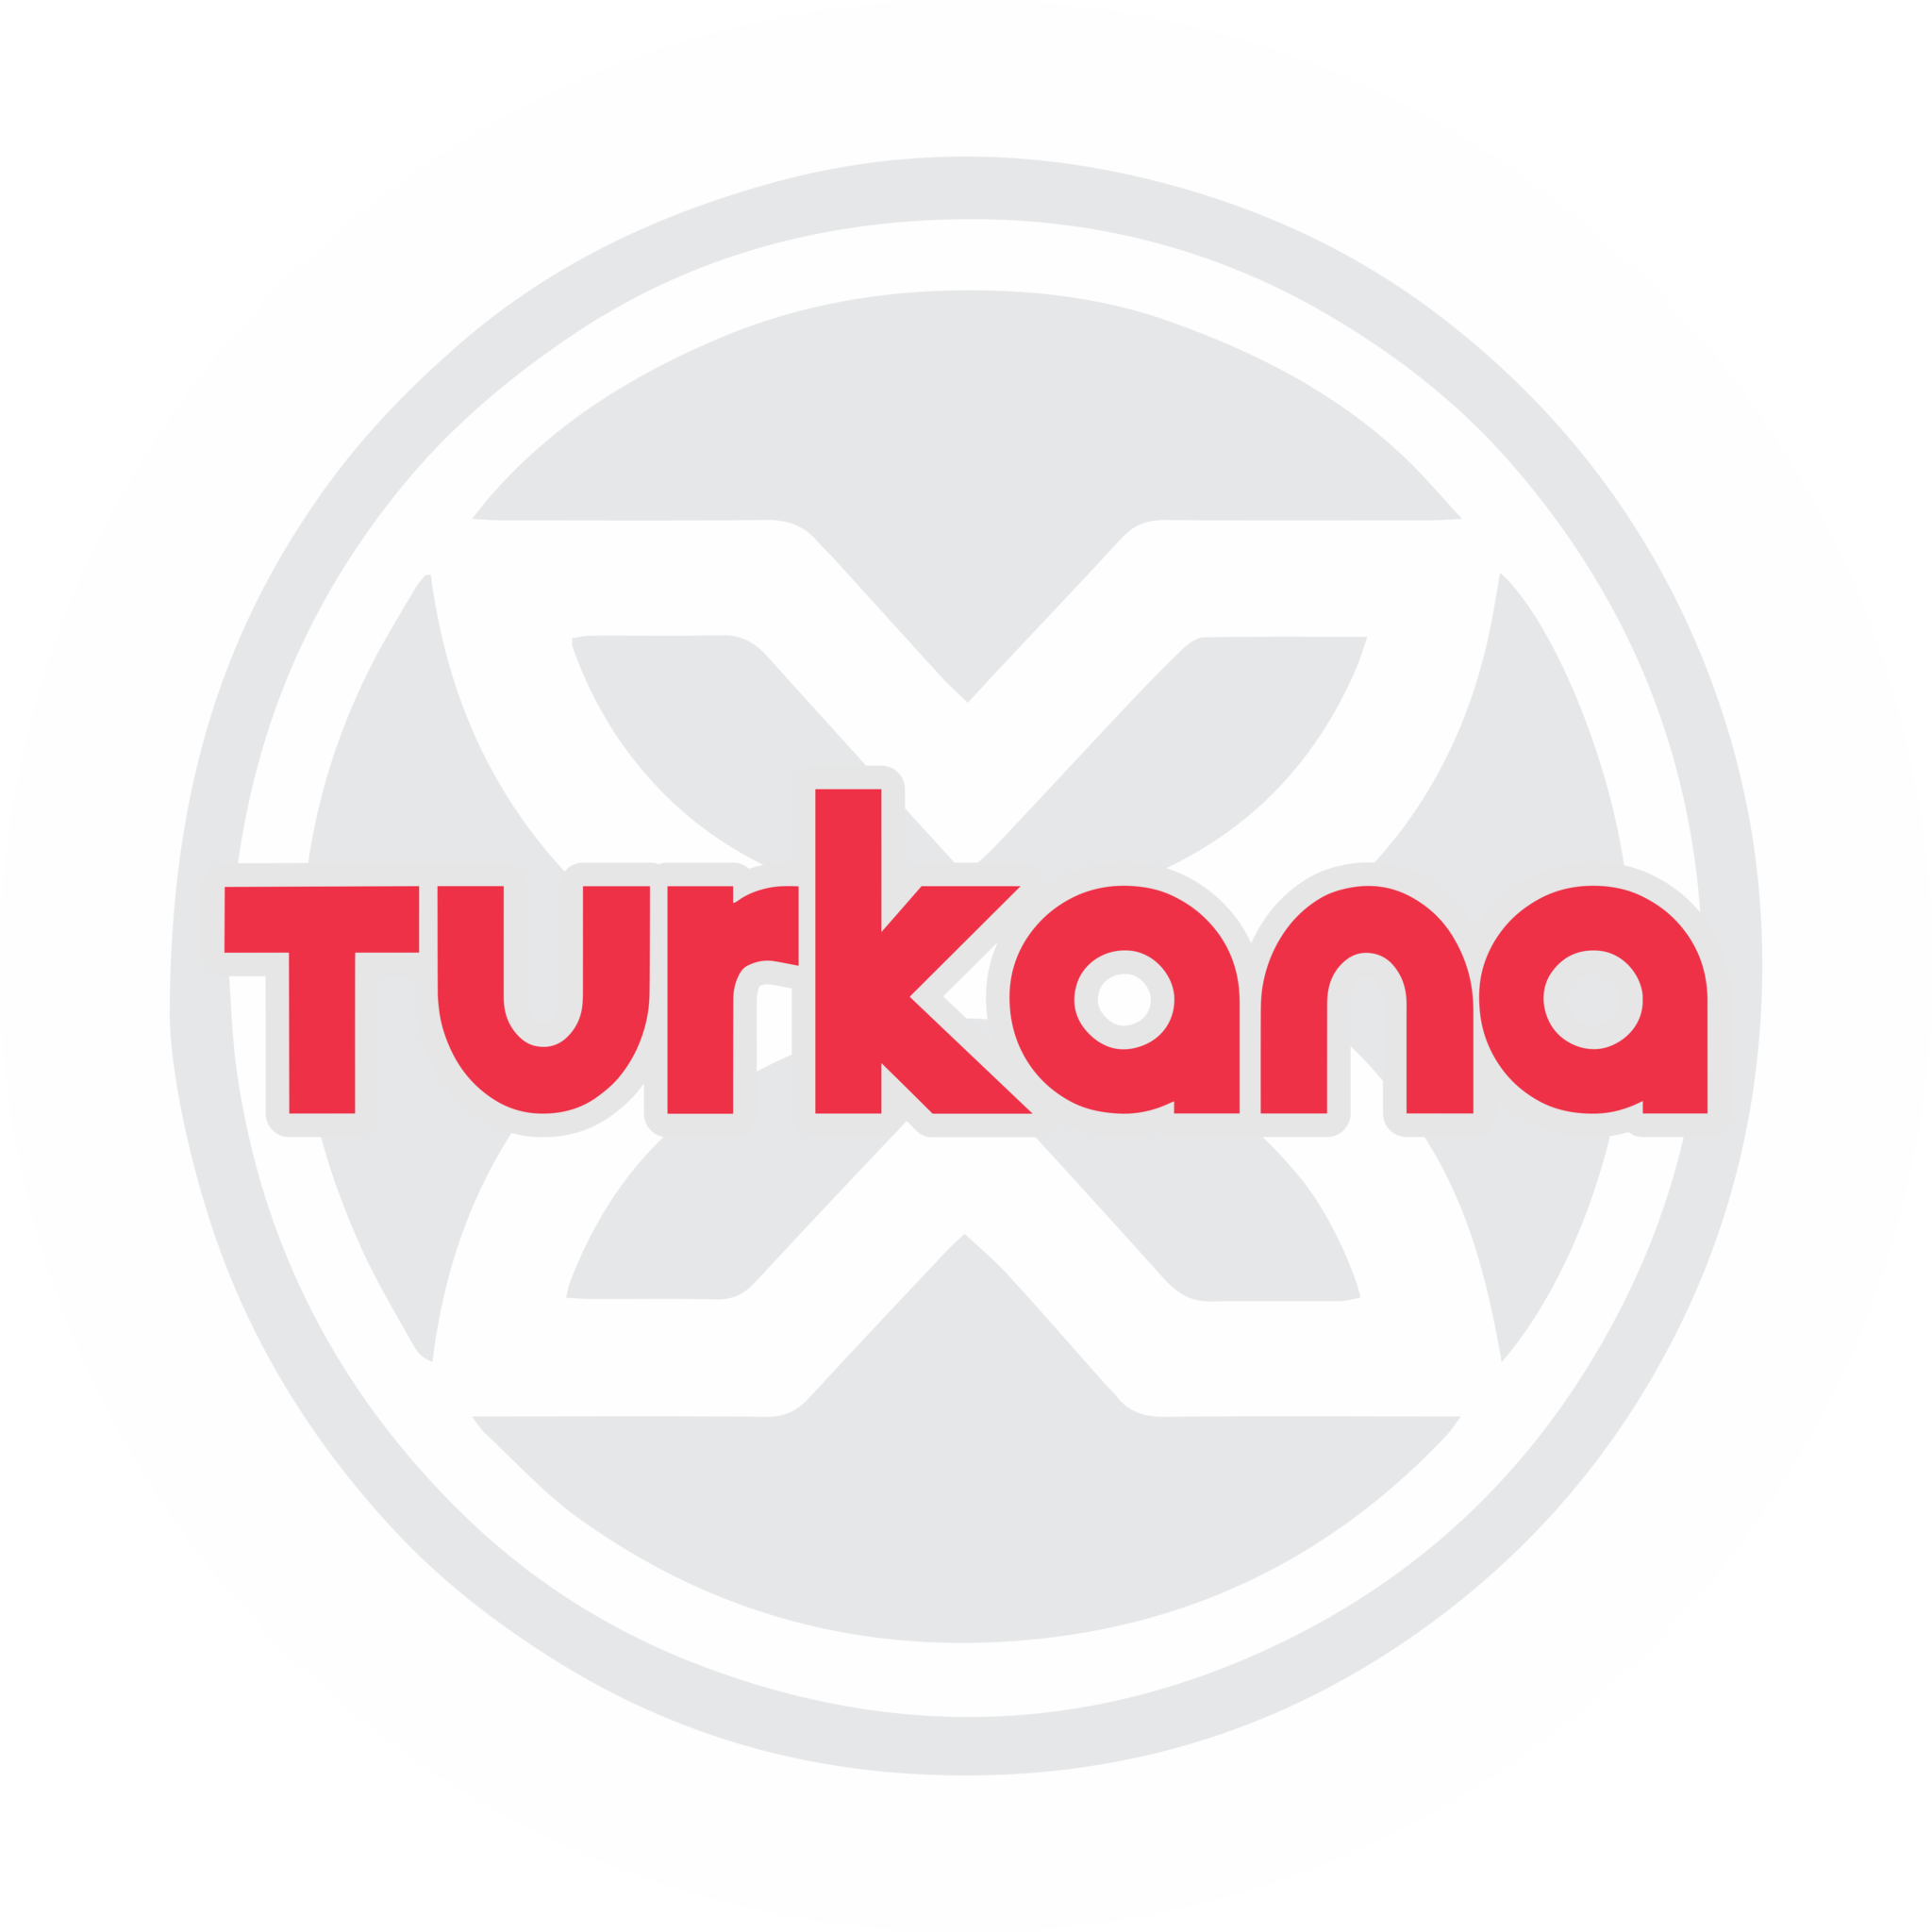 Turkana Gear